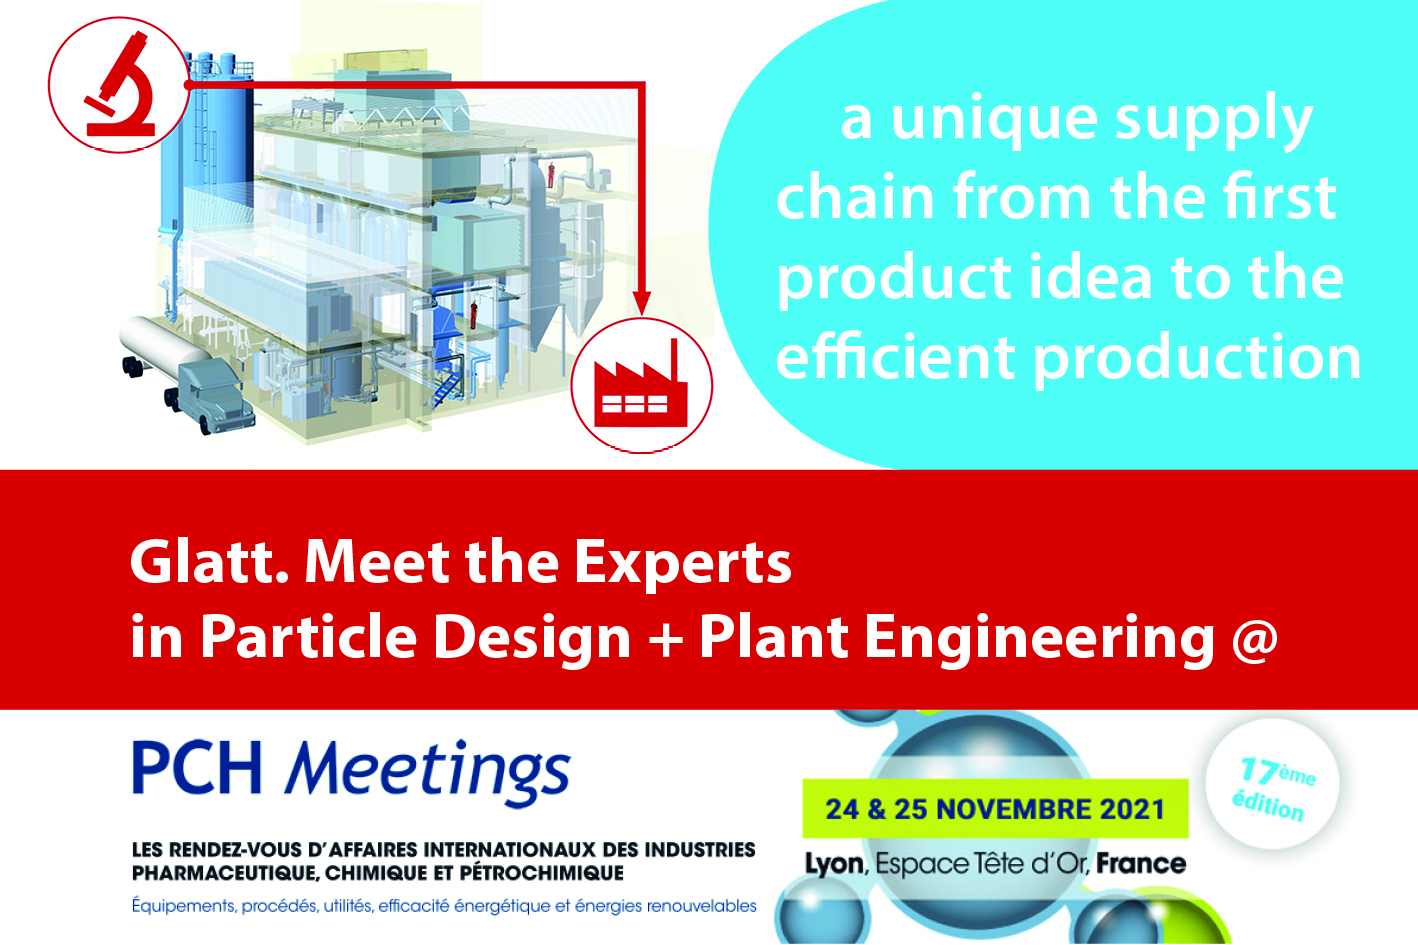 Treffen Sie die Glatt Experten für Partikeldesign und Anlagenbau zu den PCH Meetings am 24.-25. November in Lyon, Frankreich